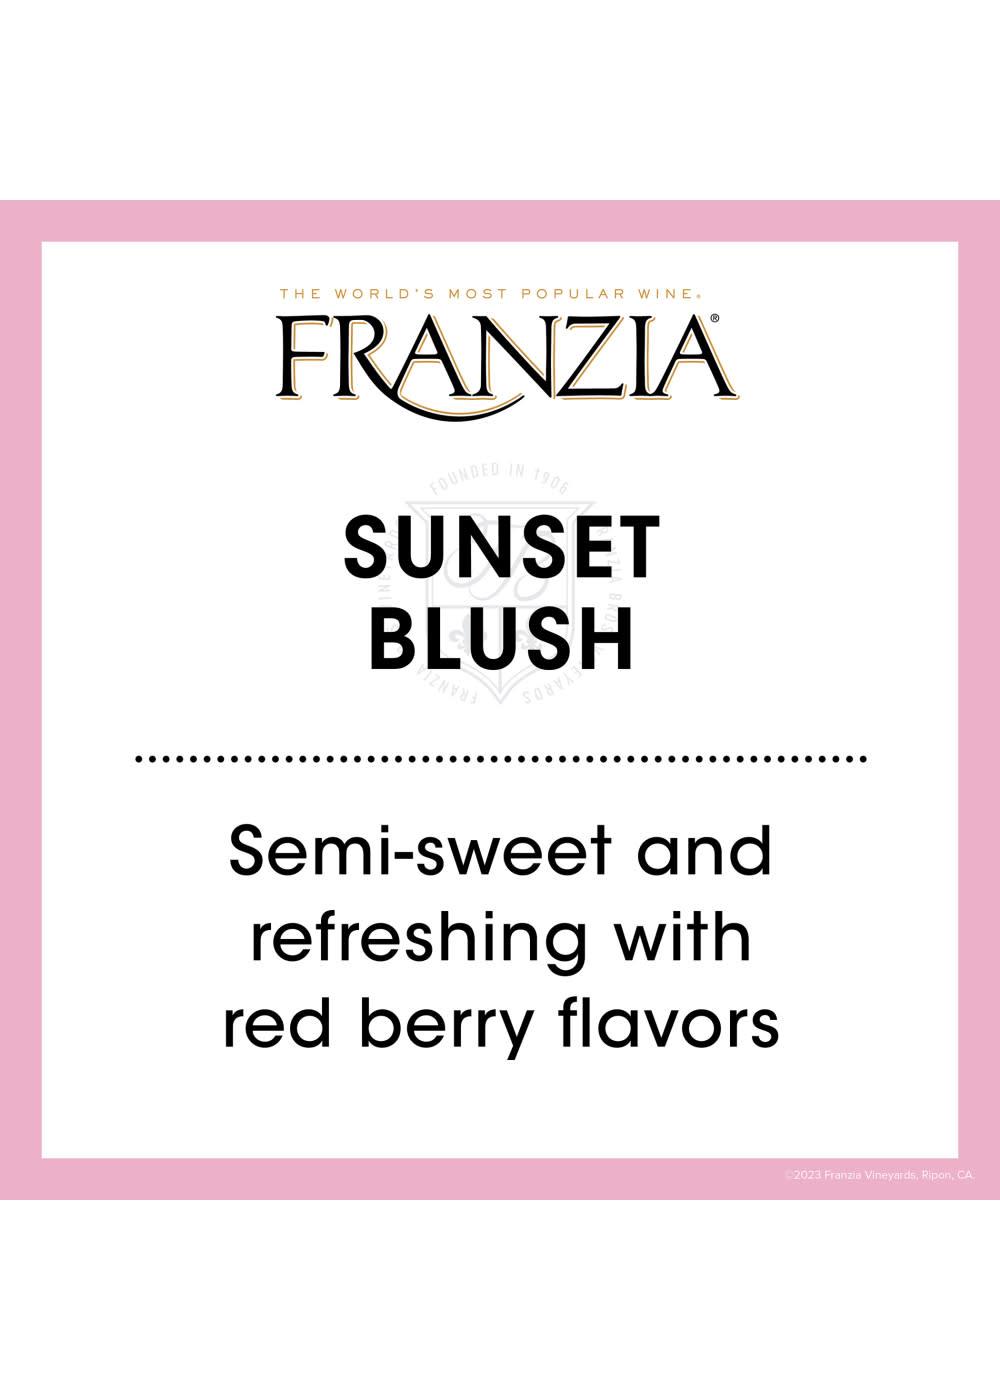 Franzia Sunset Blush Boxed Wine; image 3 of 7